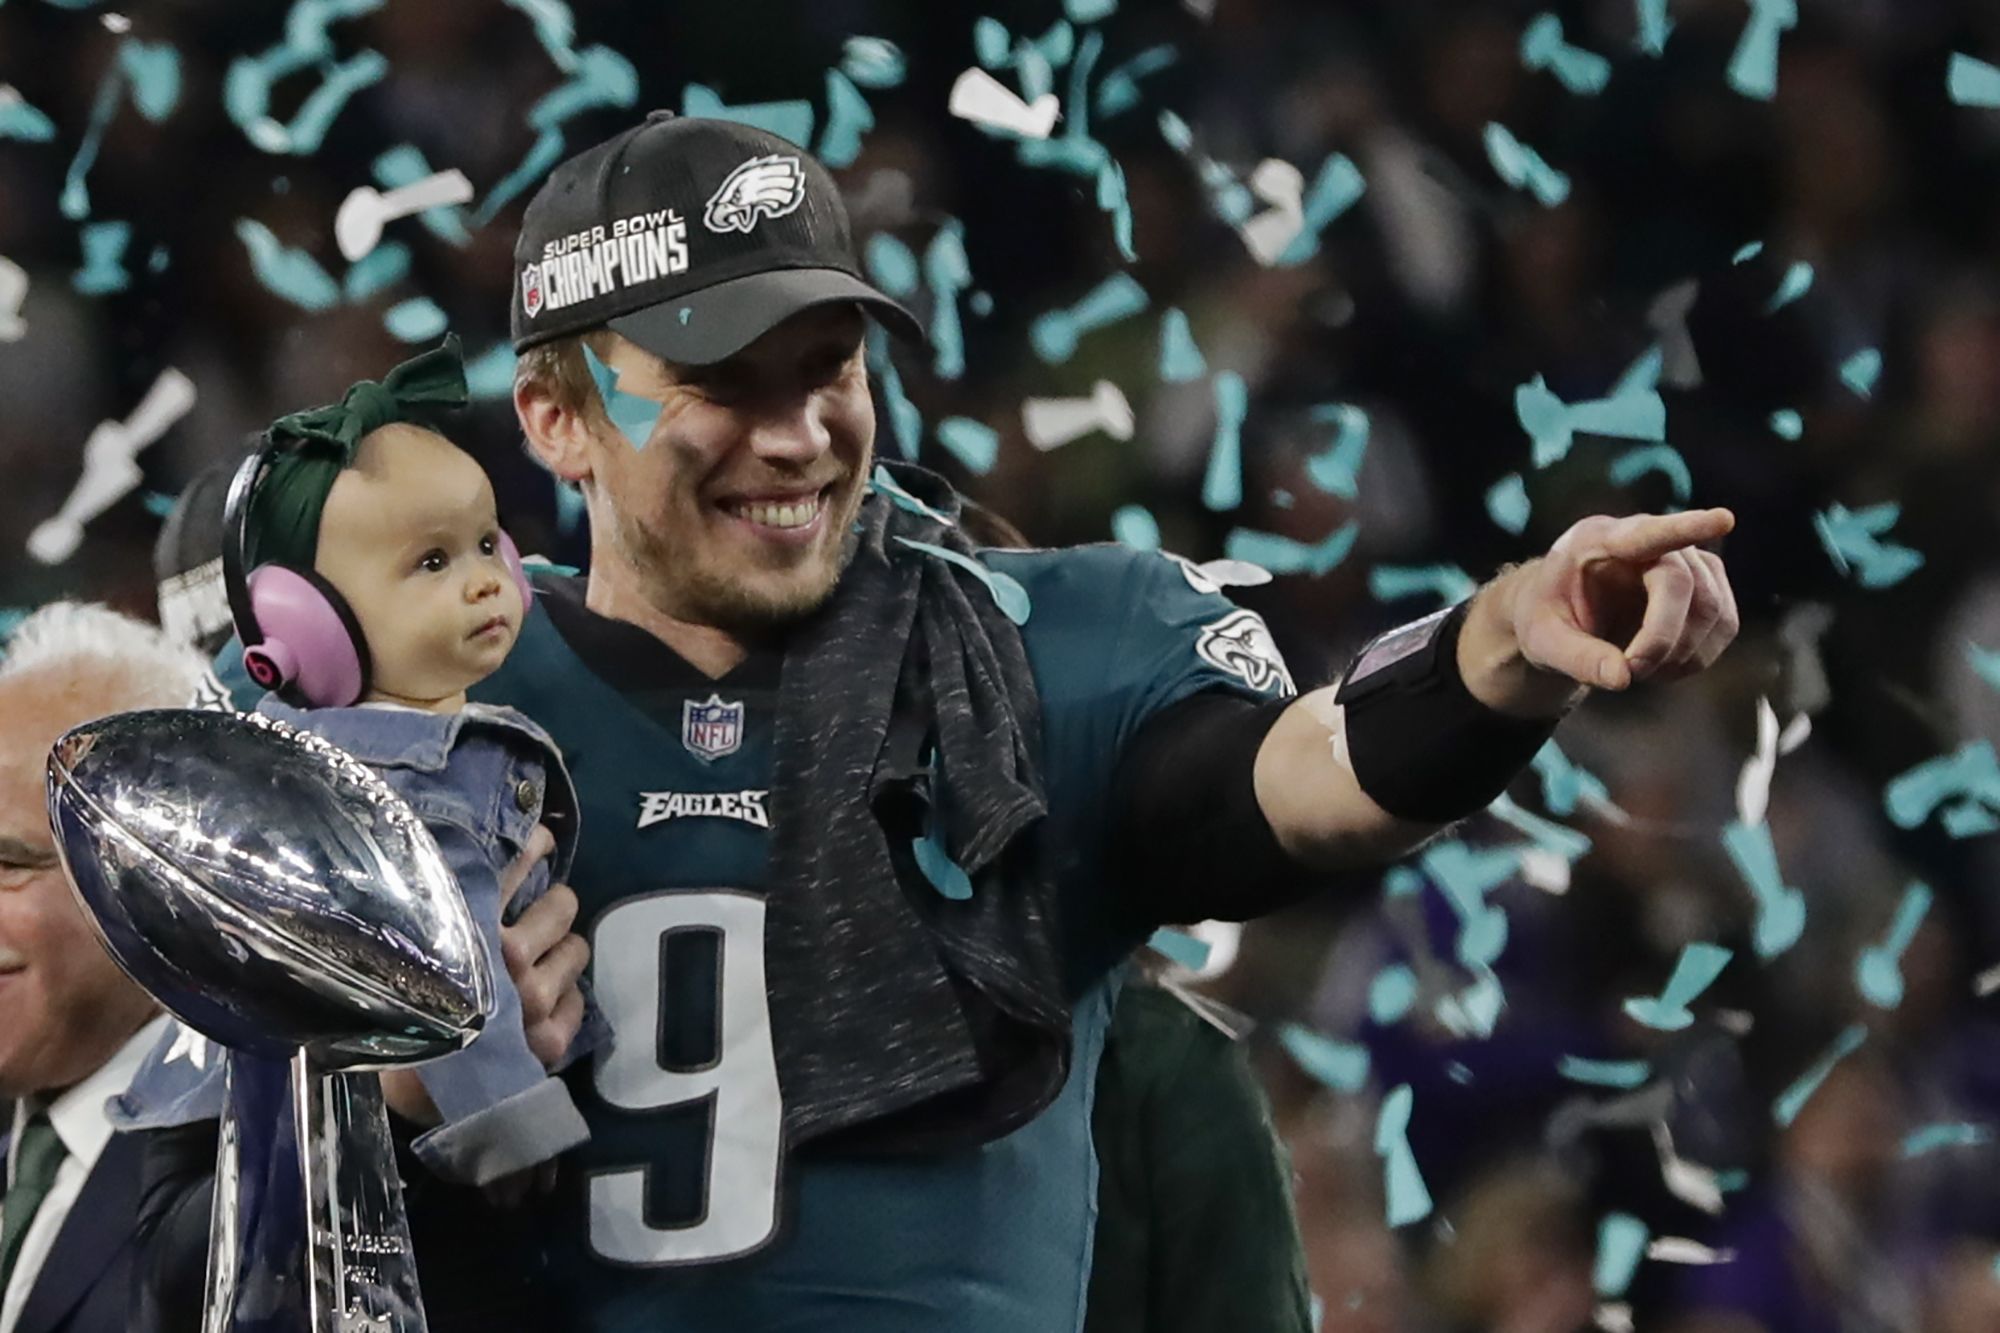 Super Bowl 2018: The best photos